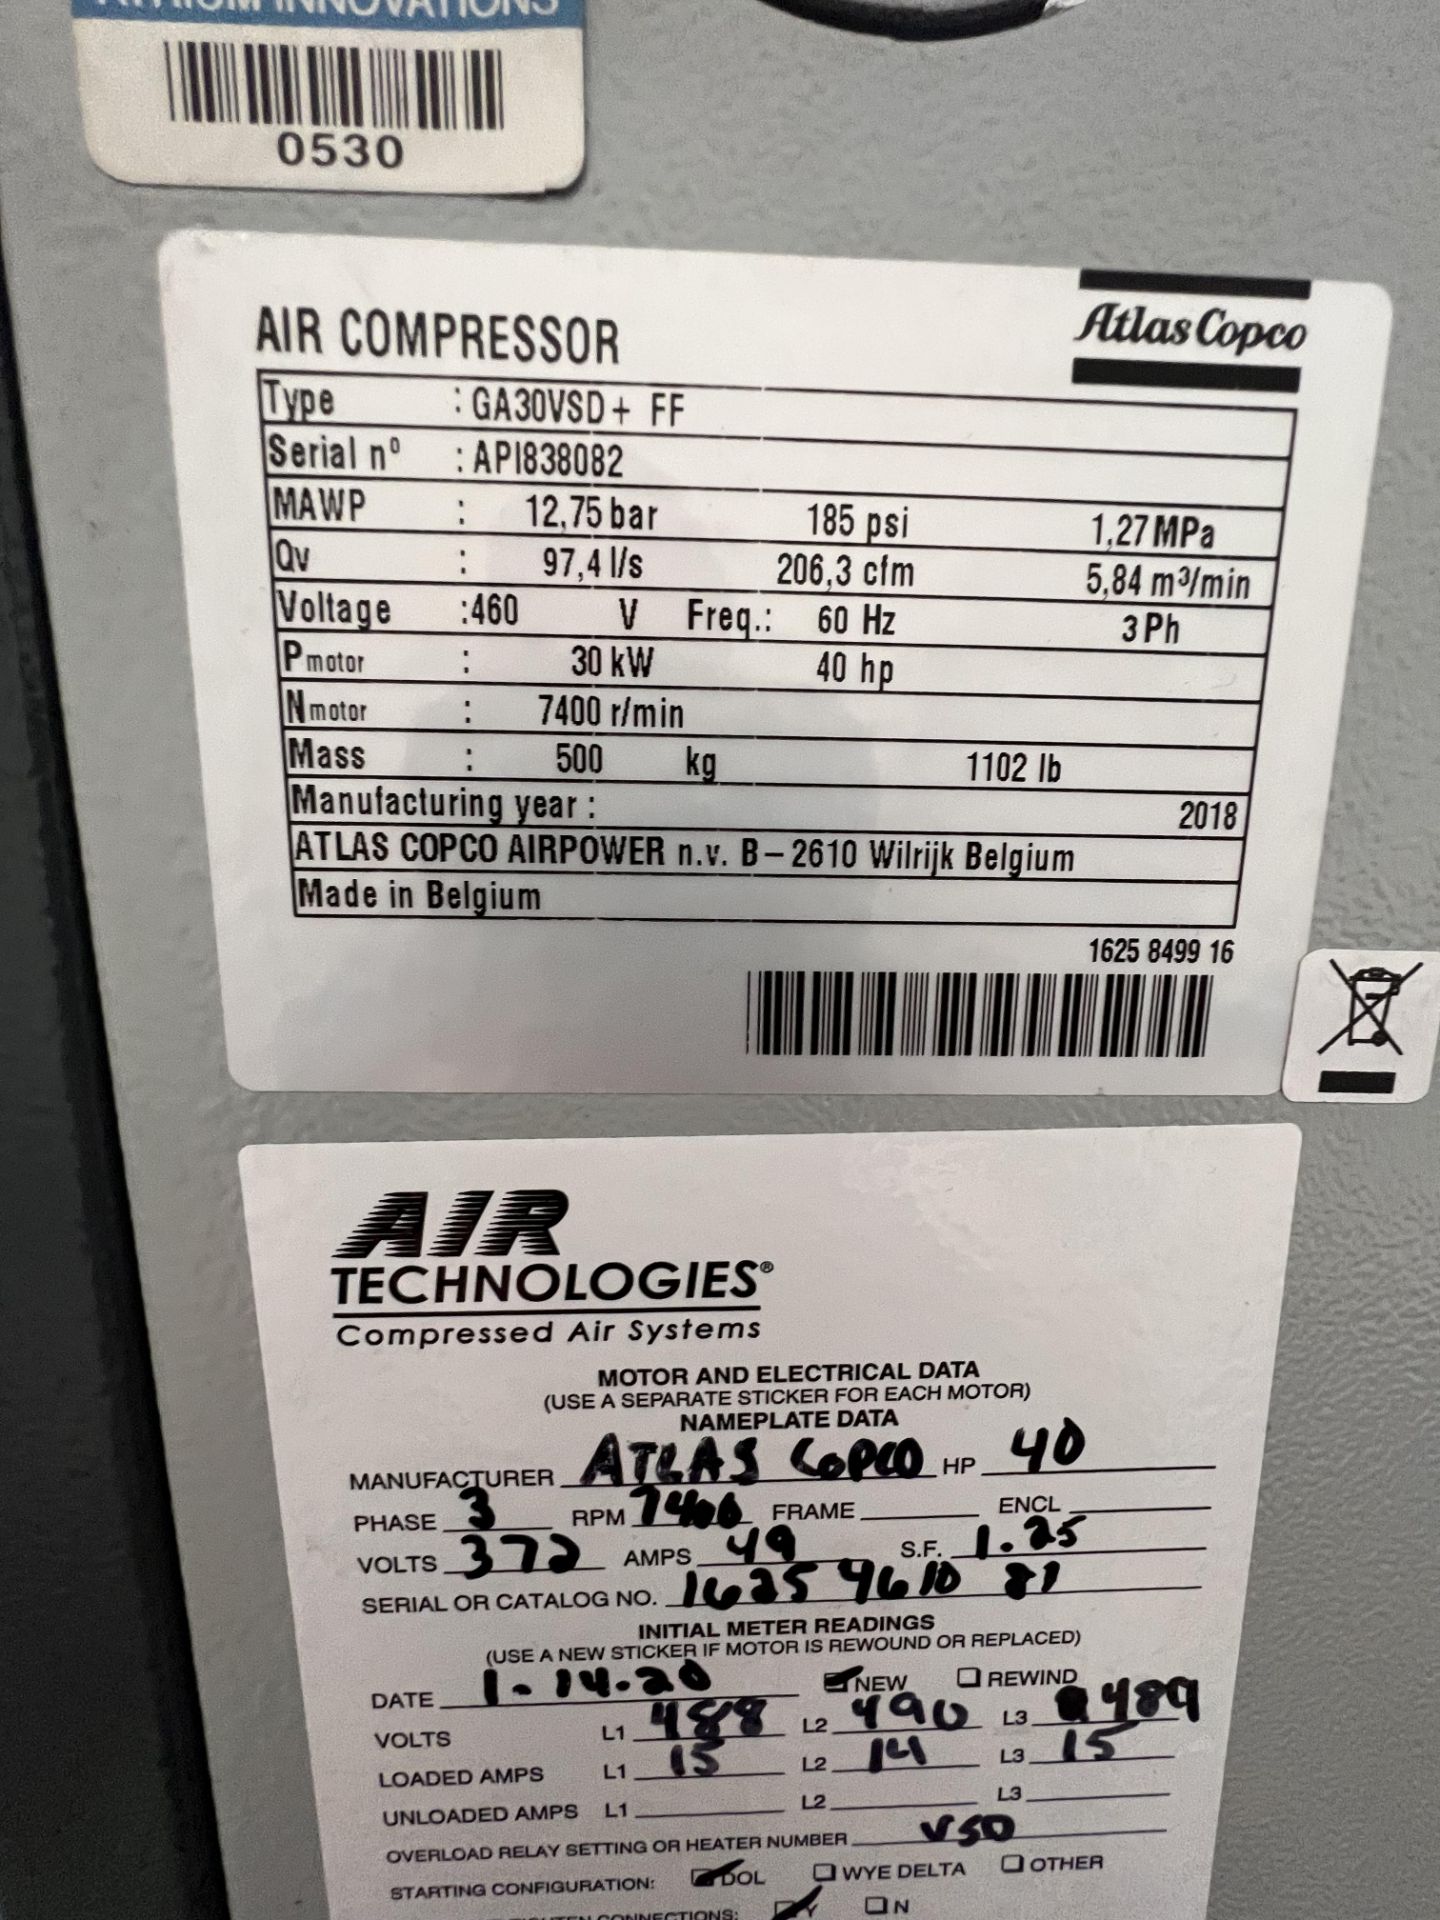 2018 ATLAS COPCO AIR COMPRESSOR, MODEL GA30VSD+FF, S/N AP1838082, 40 HP, 7400 RPM, MAWP 12,75 BAR, - Image 8 of 11